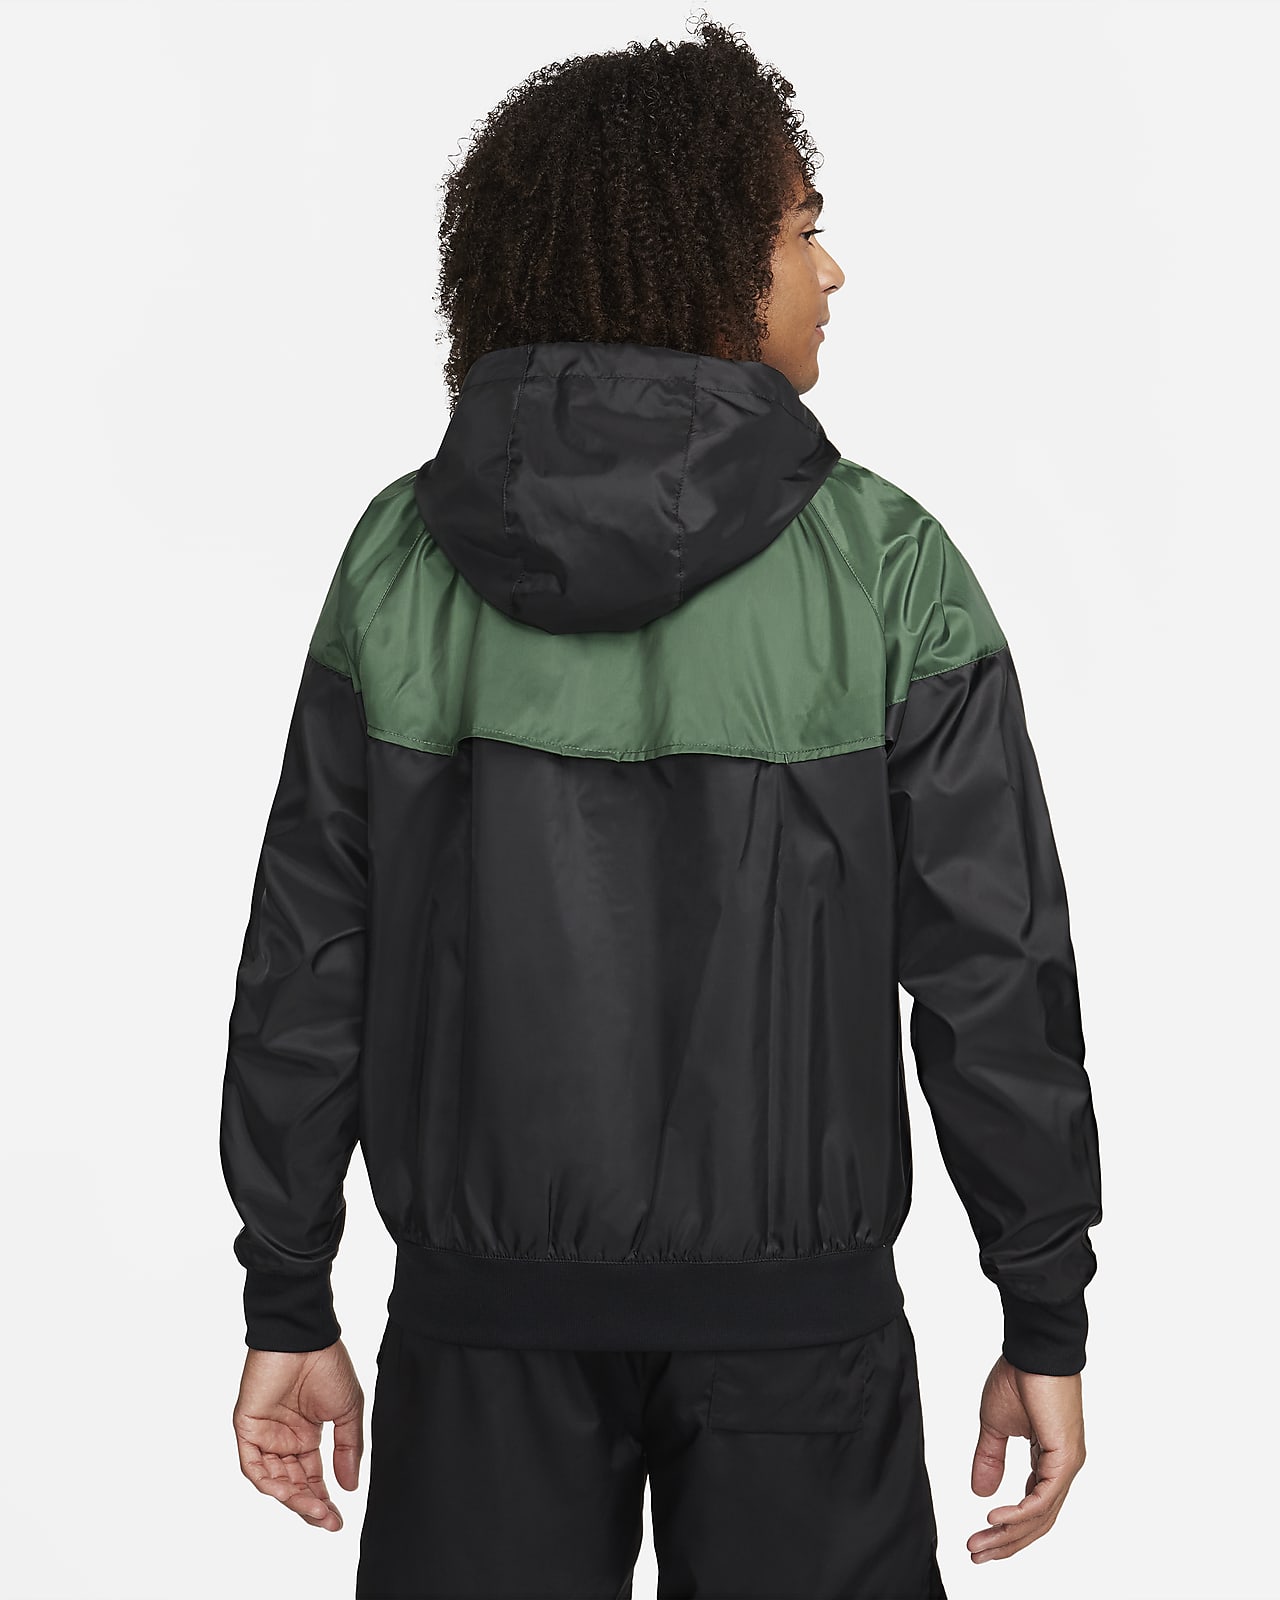 Nike Sportswear Windrunner Men\'s Jacket. Hooded